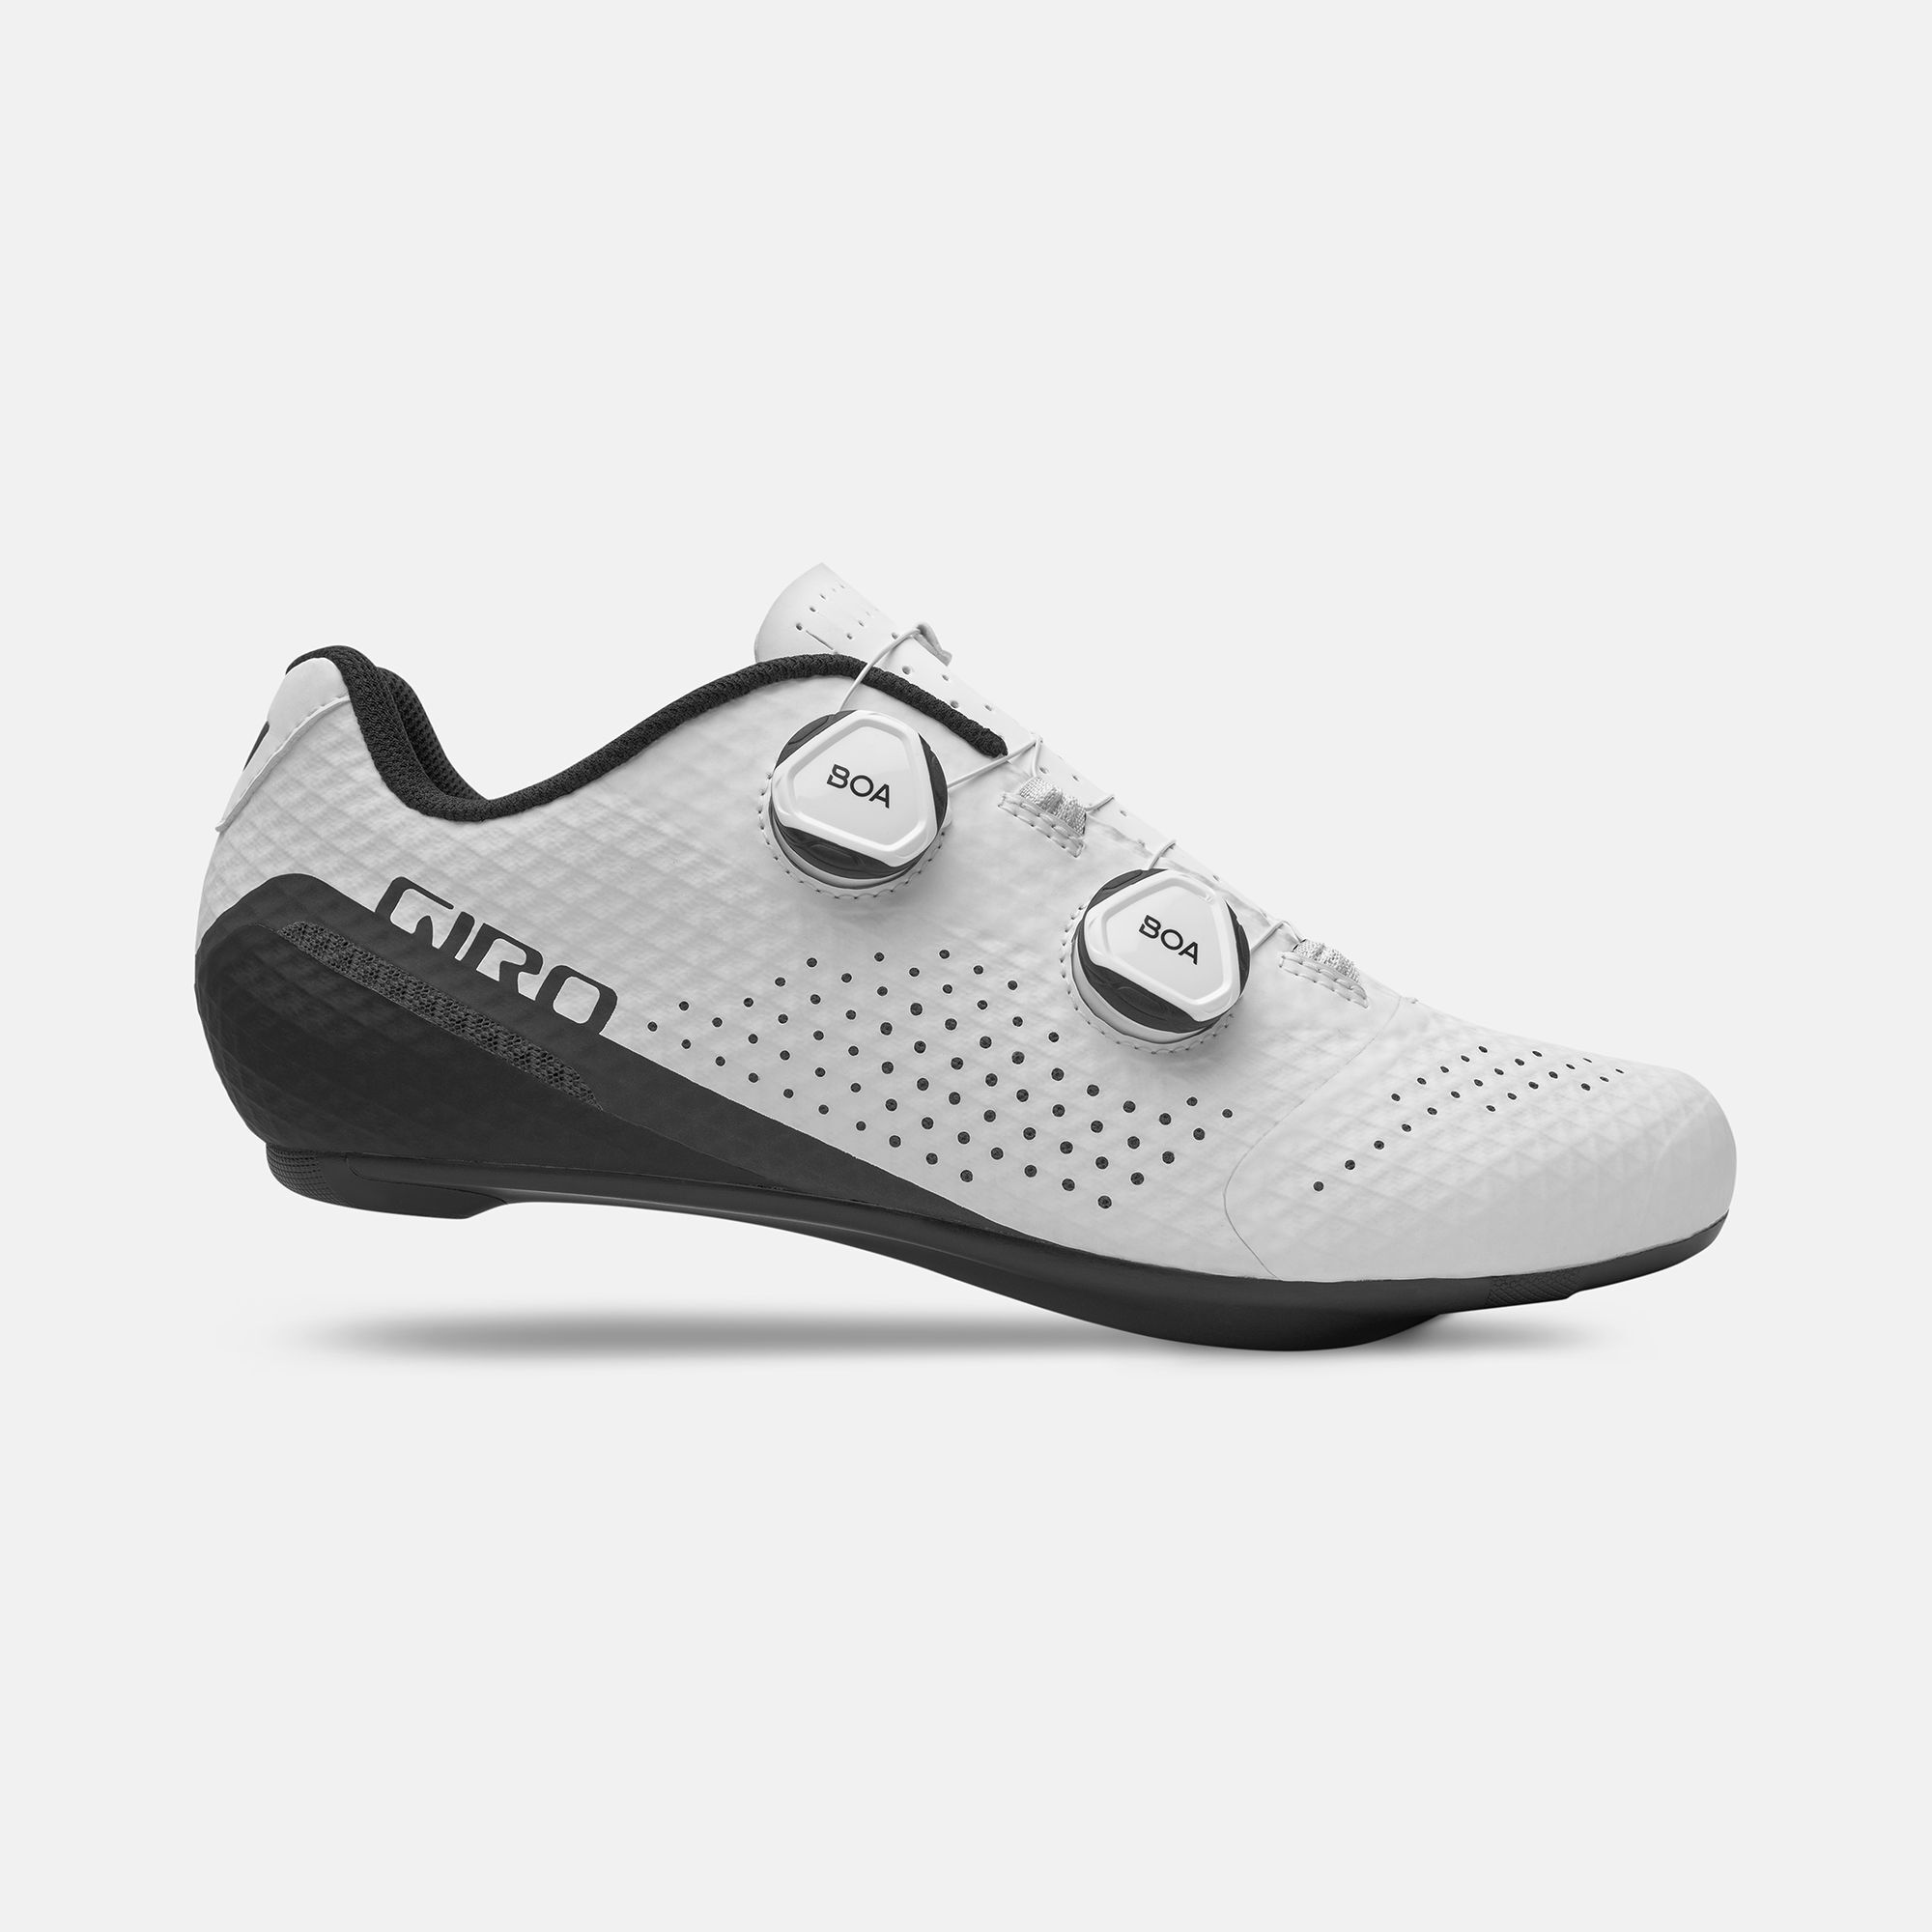 Men's Bike Shoes | Giro